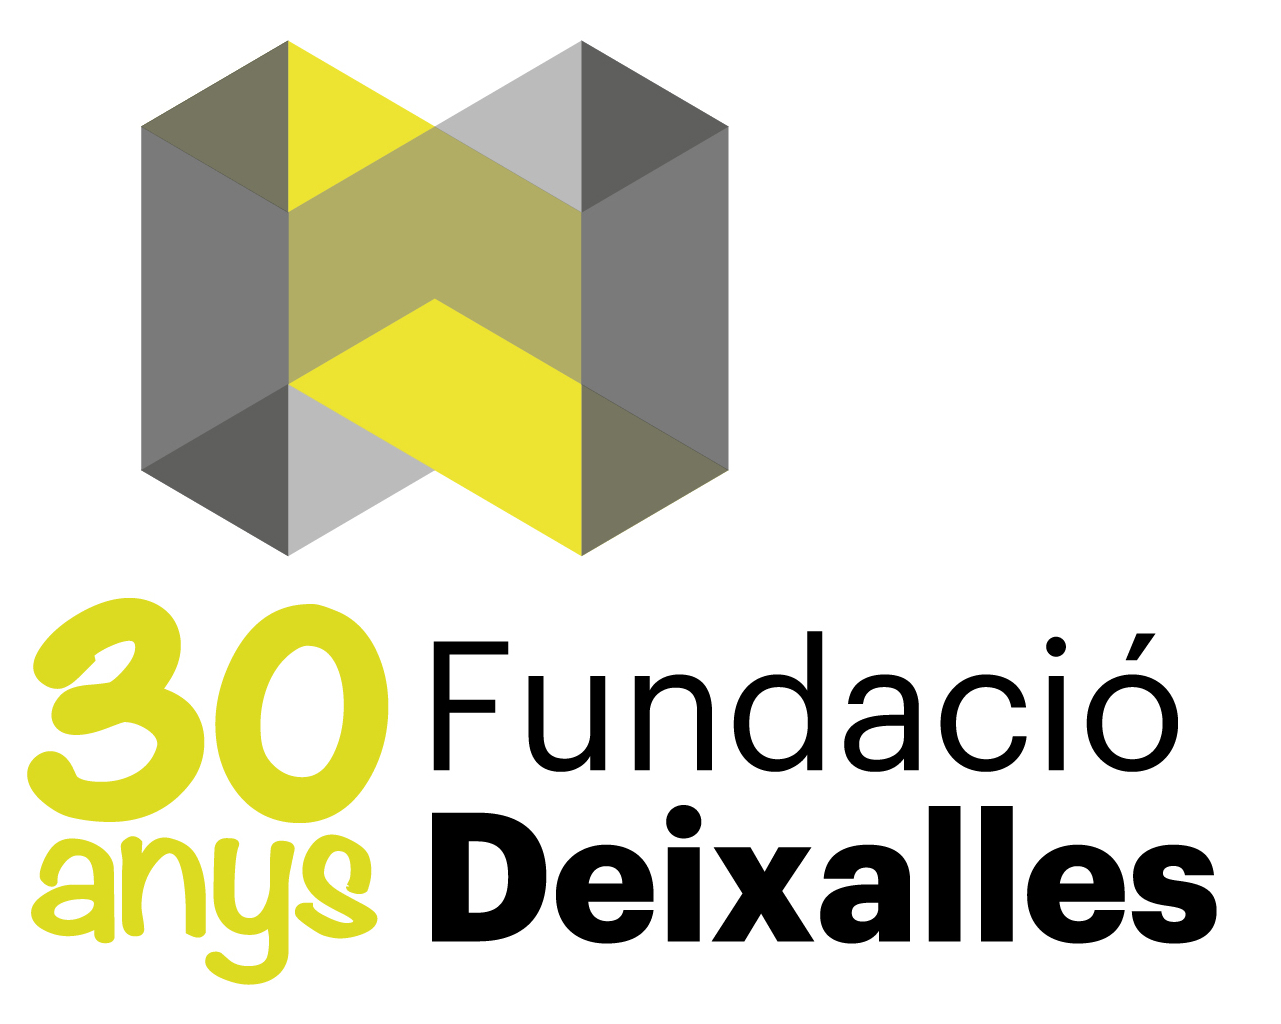 30 AÑOS DE FUNDACIÓ DEIXALLES